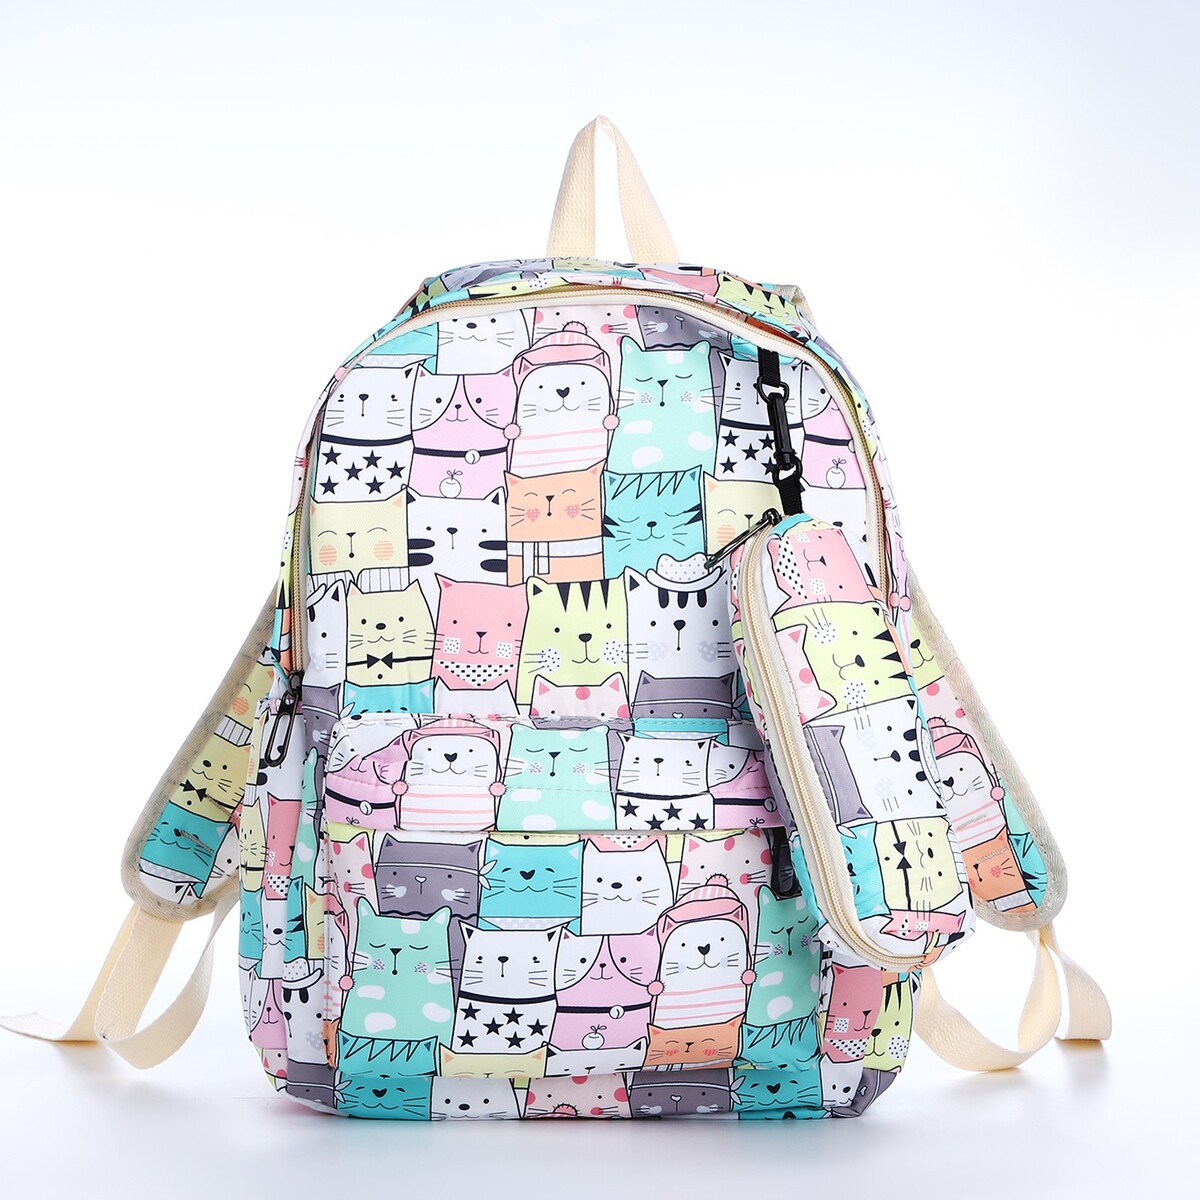 Рюкзак школьный из текстиля на молнии, 3 кармана, пенал, цвет разноцветный рюкзак школьный из текстиля на молнии 3 кармана пенал белый разно ный